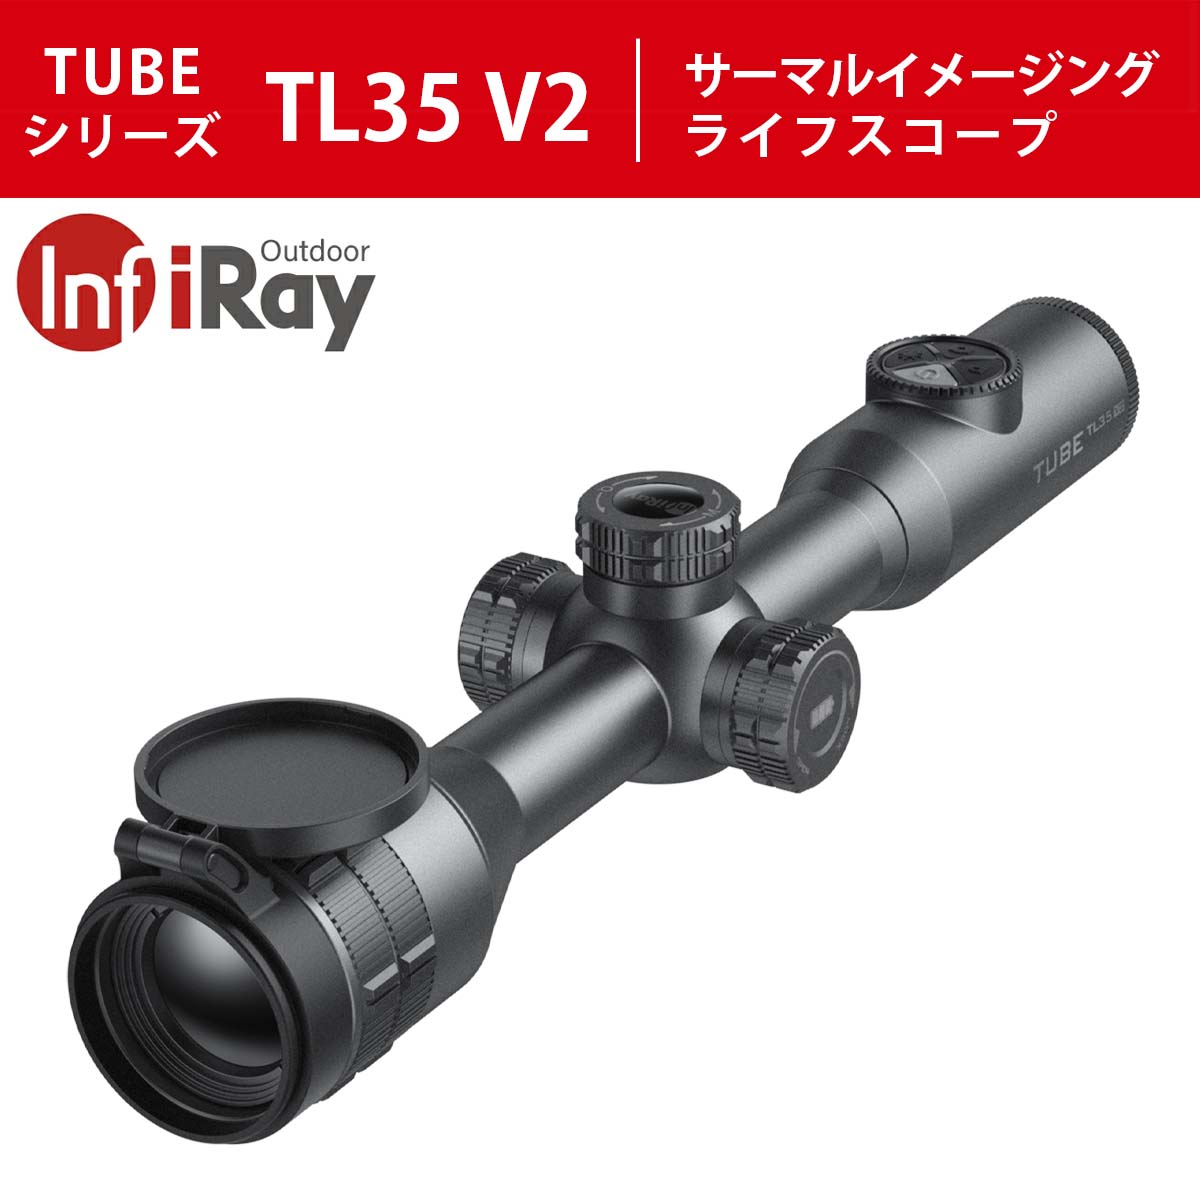 IRAY サーマルイメージングライフスコープ TUBEシリーズ TL35V2 光学機器,暗視スコープ タイムテクノロジー公式ショップ